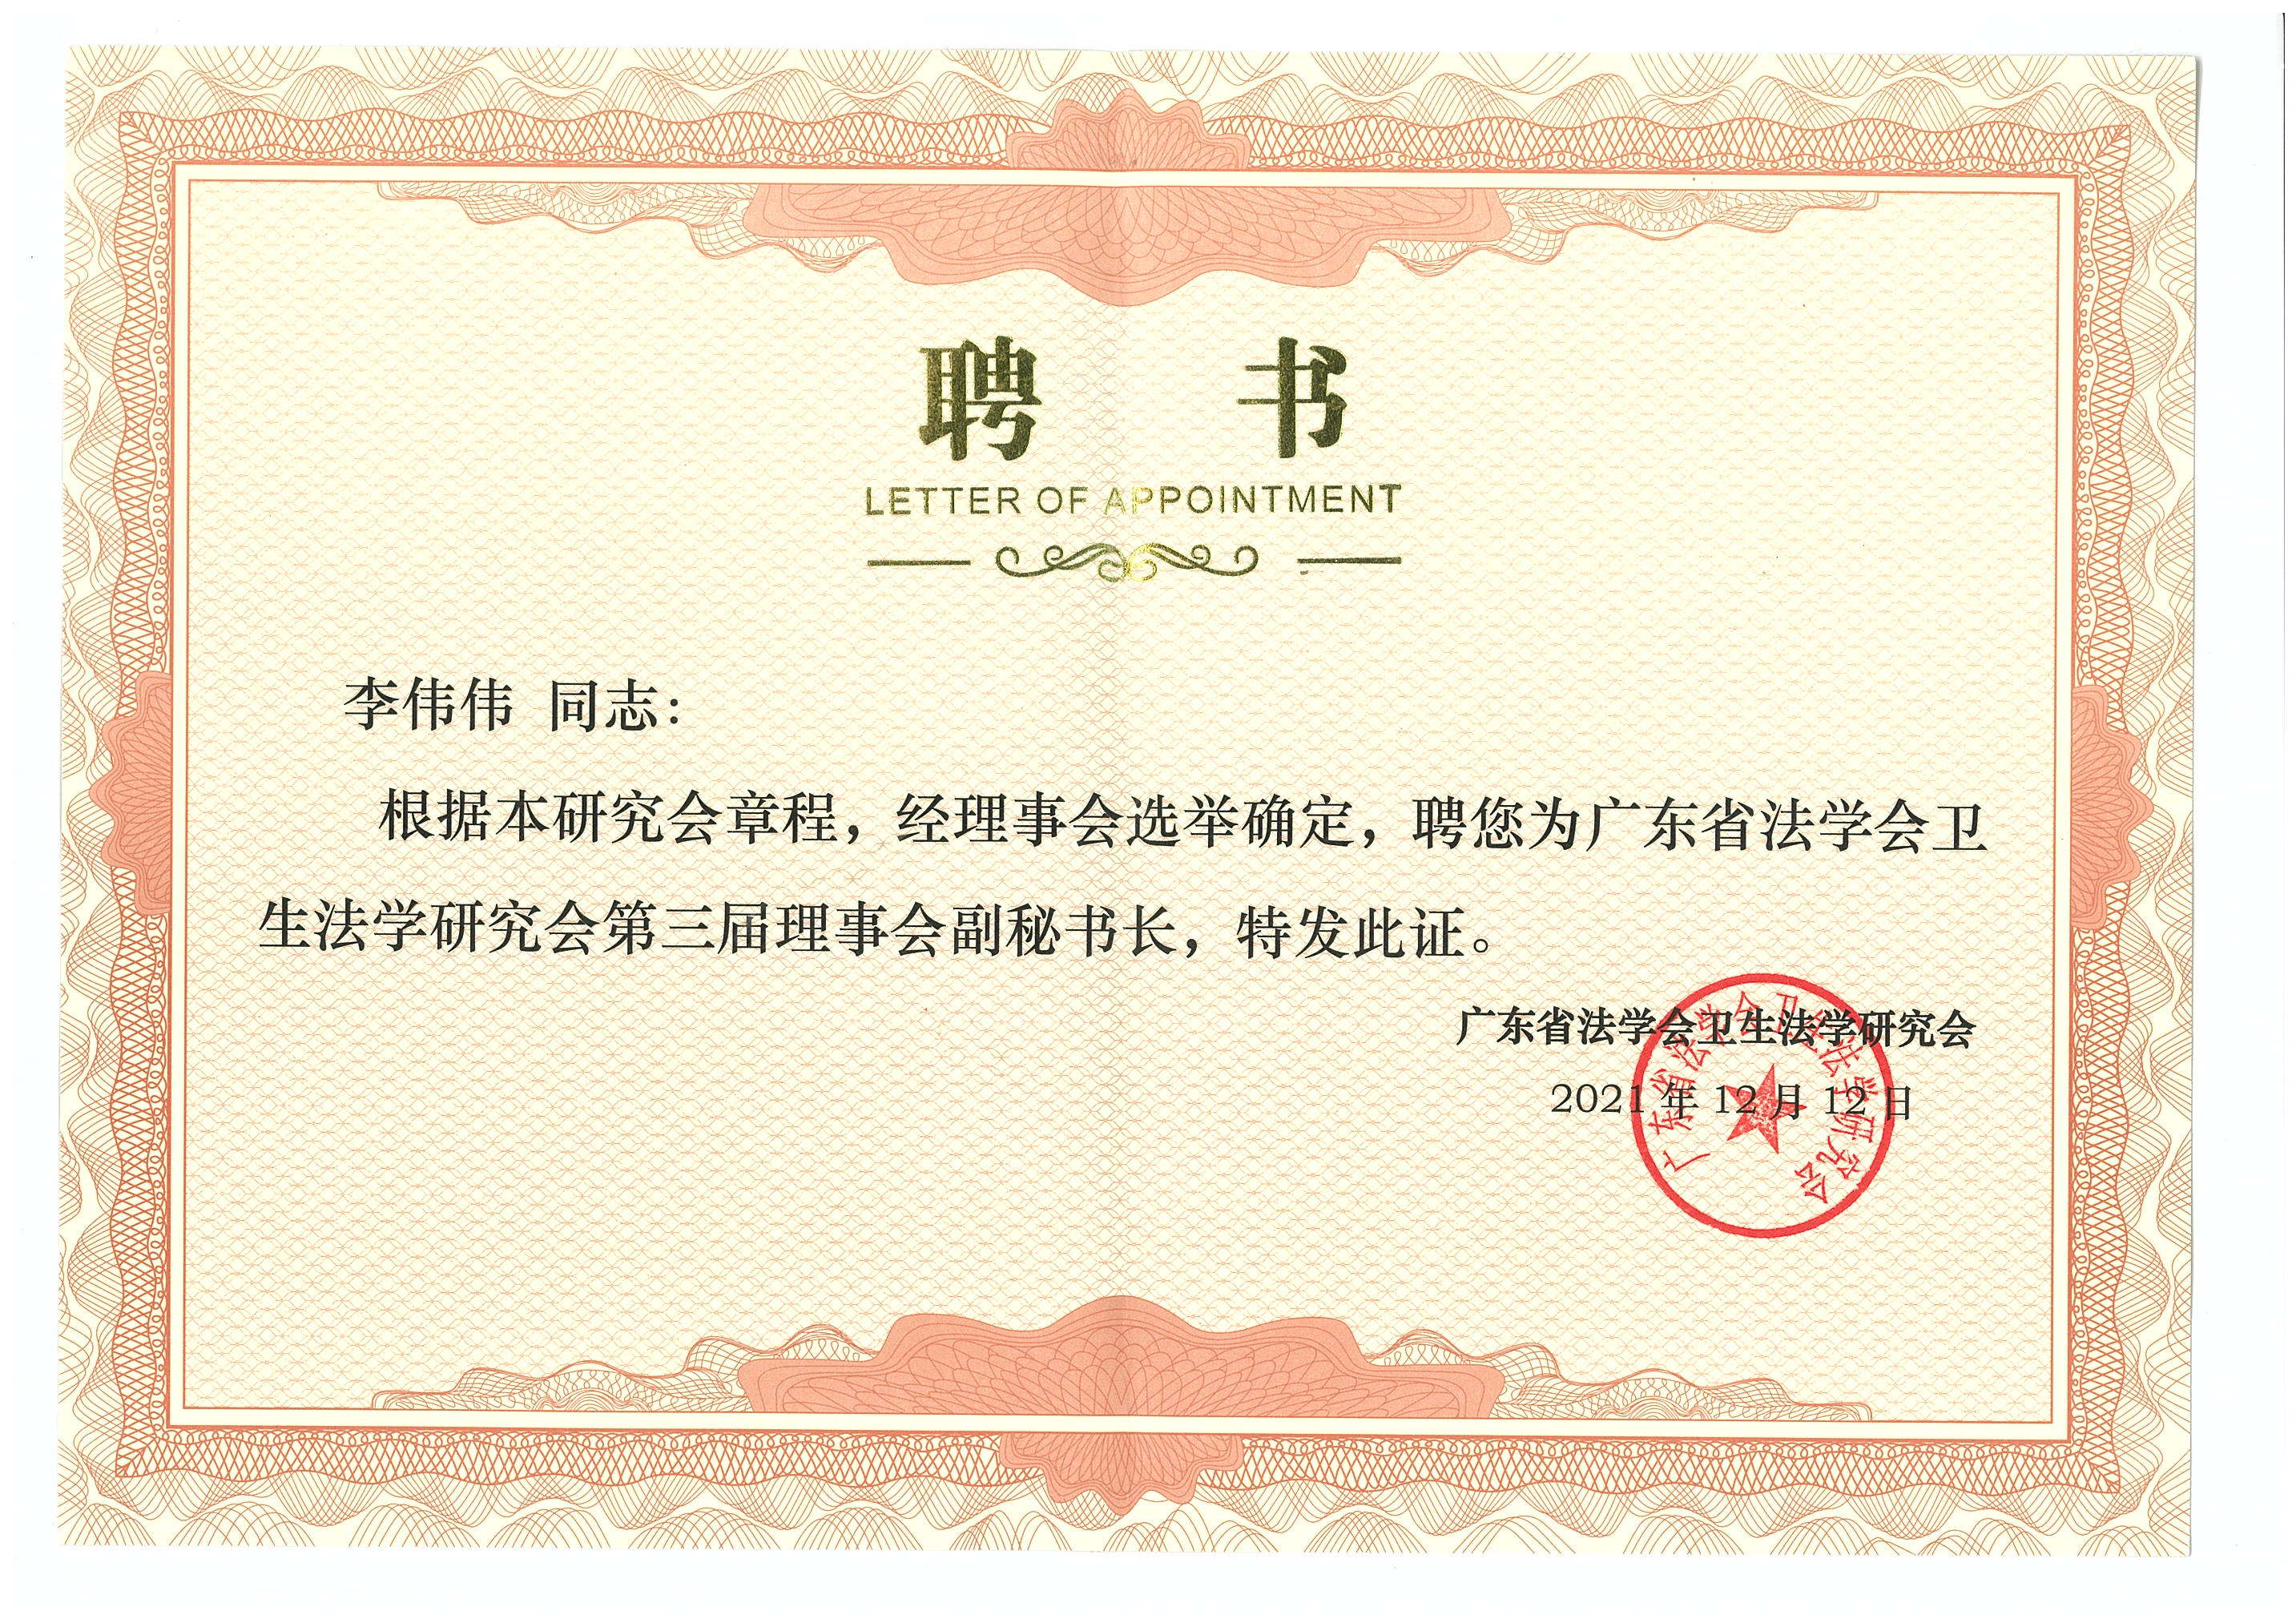  2021年12月，李伟伟被聘为广东省法学会卫生法学研究会第三届理事会副秘书长